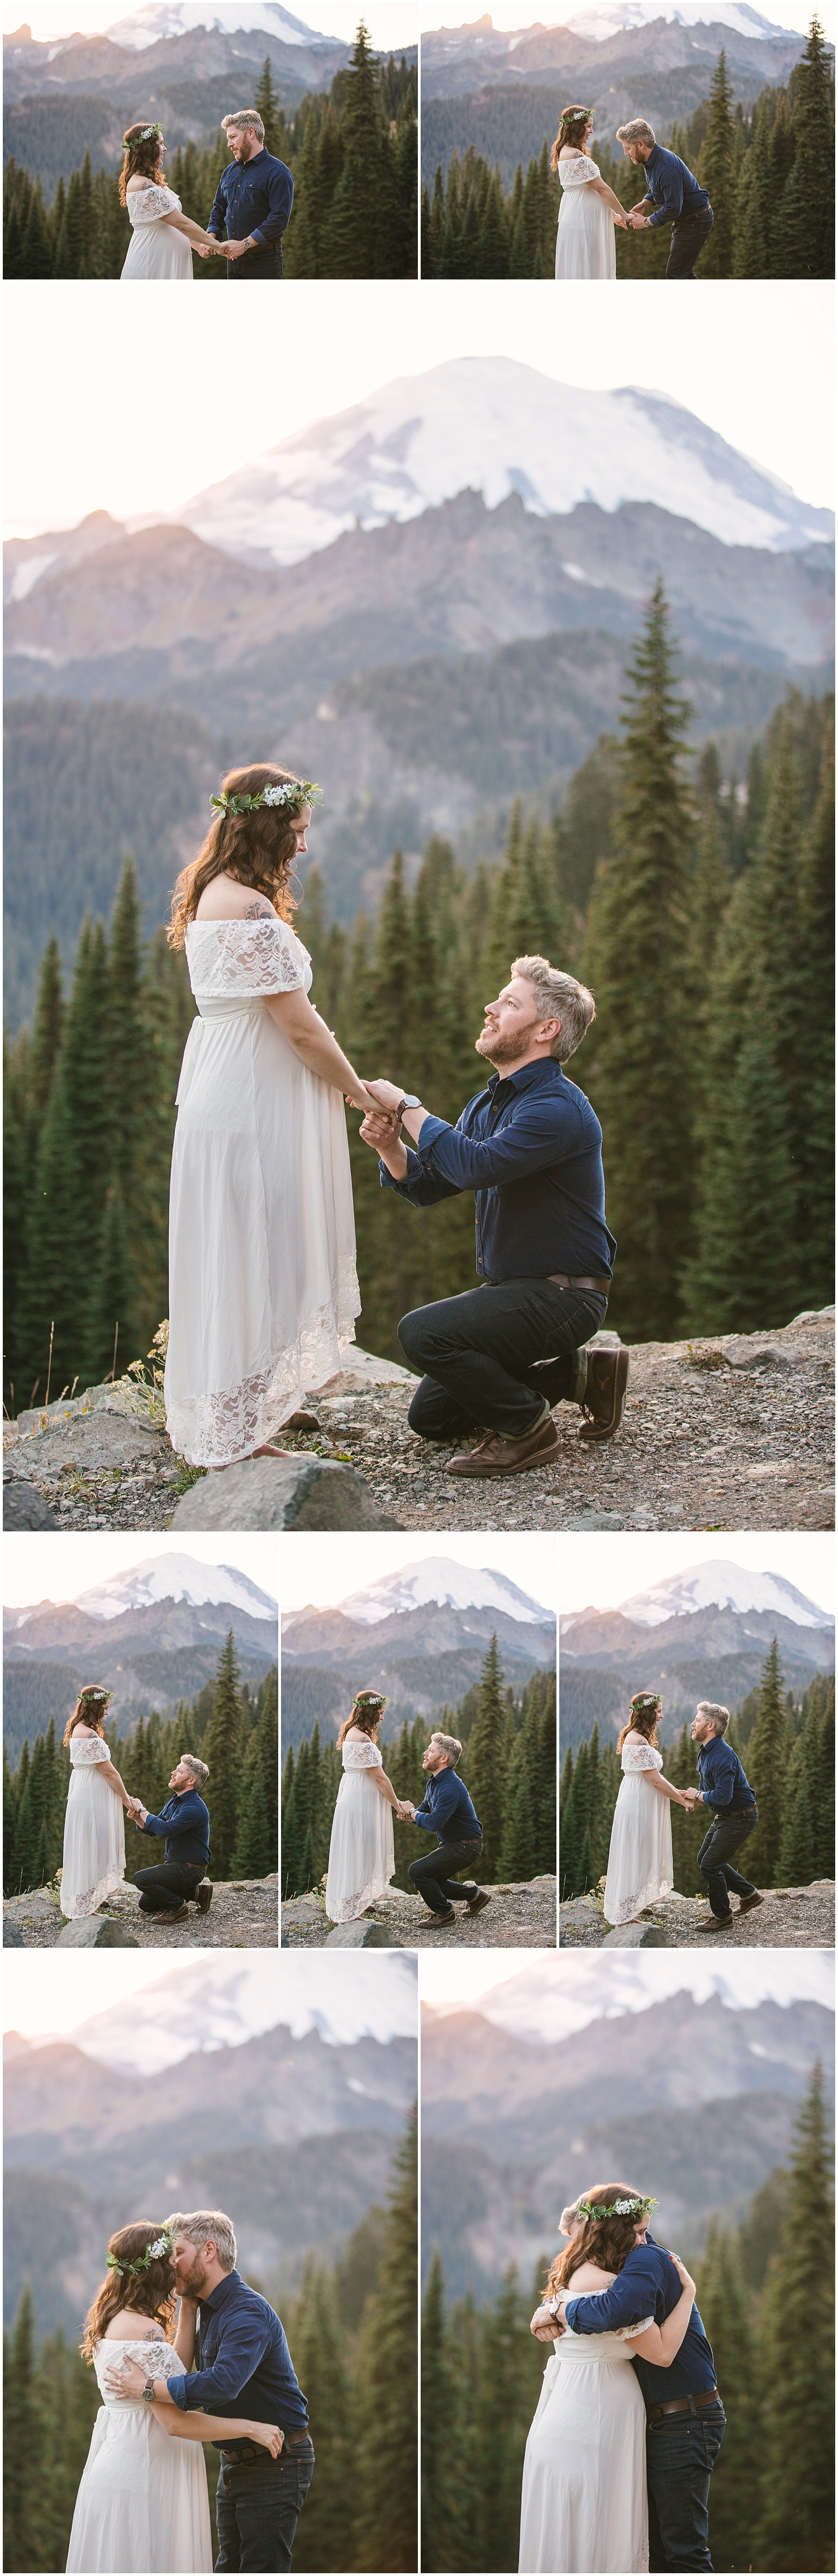 Surprise proposal at Mount Rainier National Park